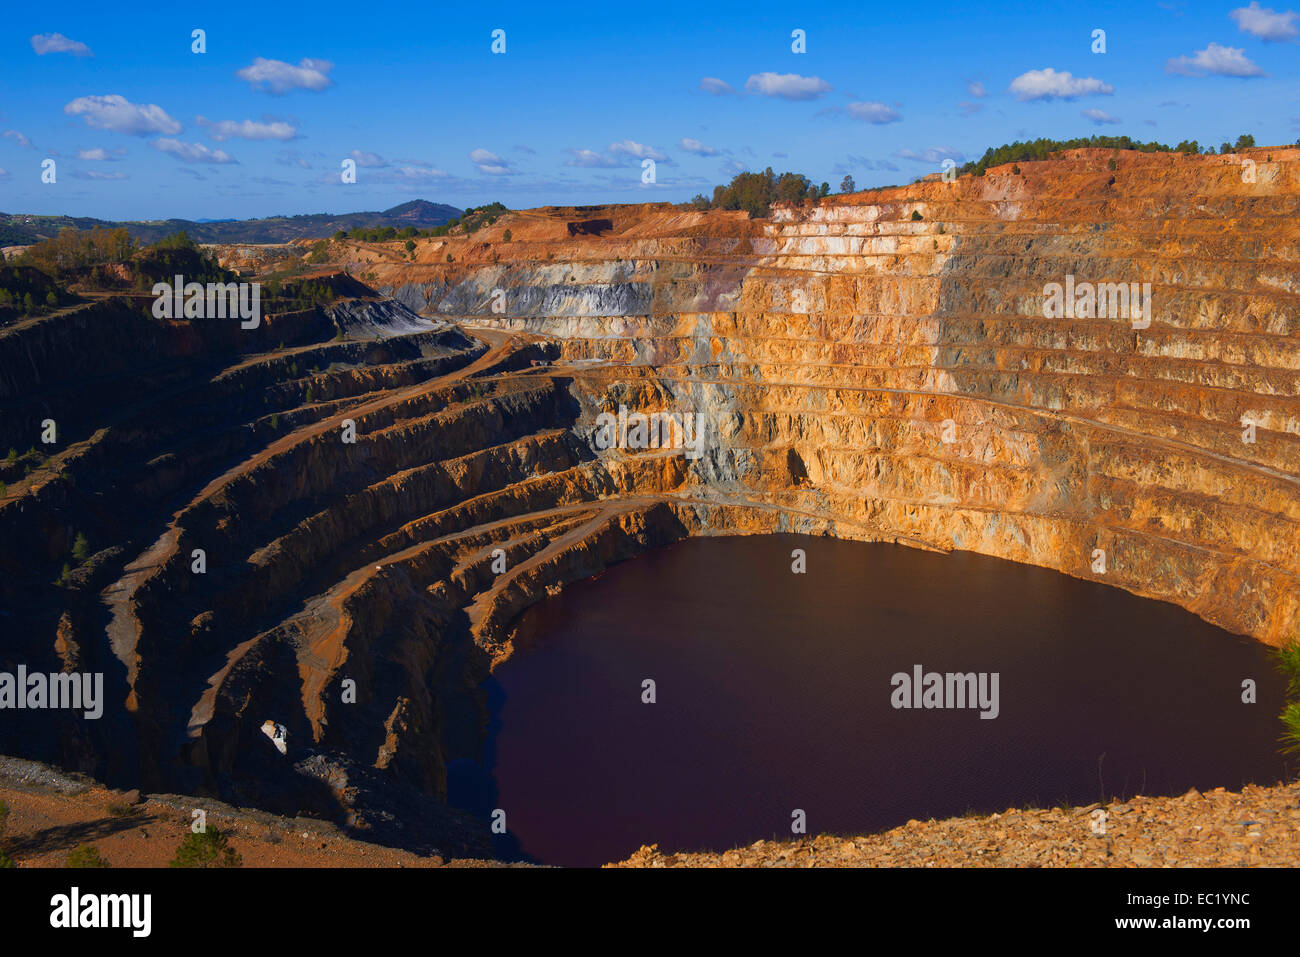 Rio Tinto mining company, Corta Atalaya open pit mine, Huelva province, Andalusia, Spain Stock Photo